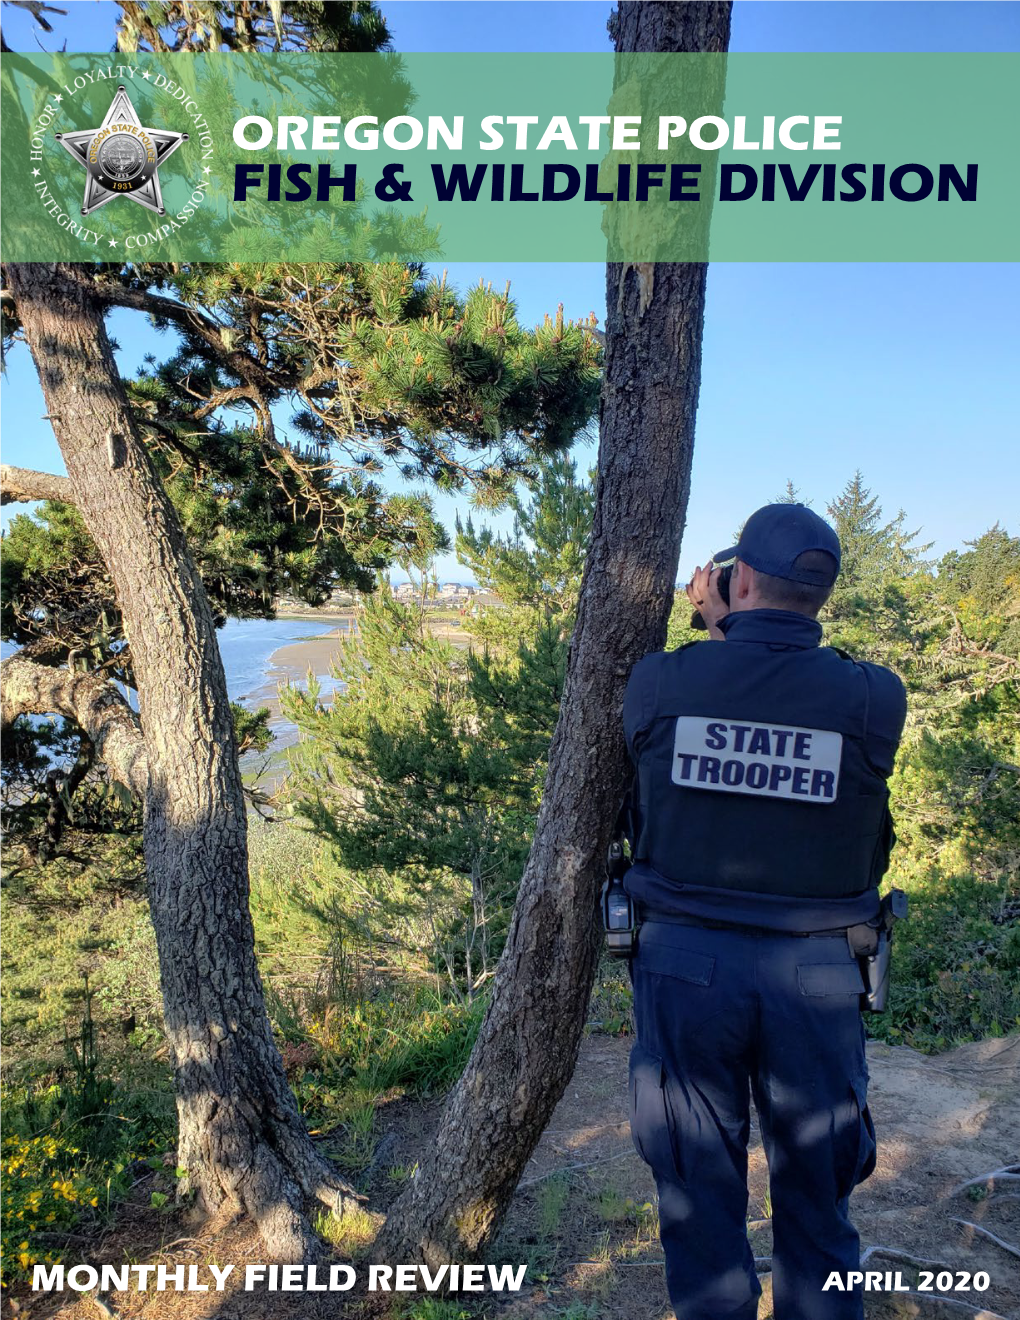 Fish & Wildlife Division